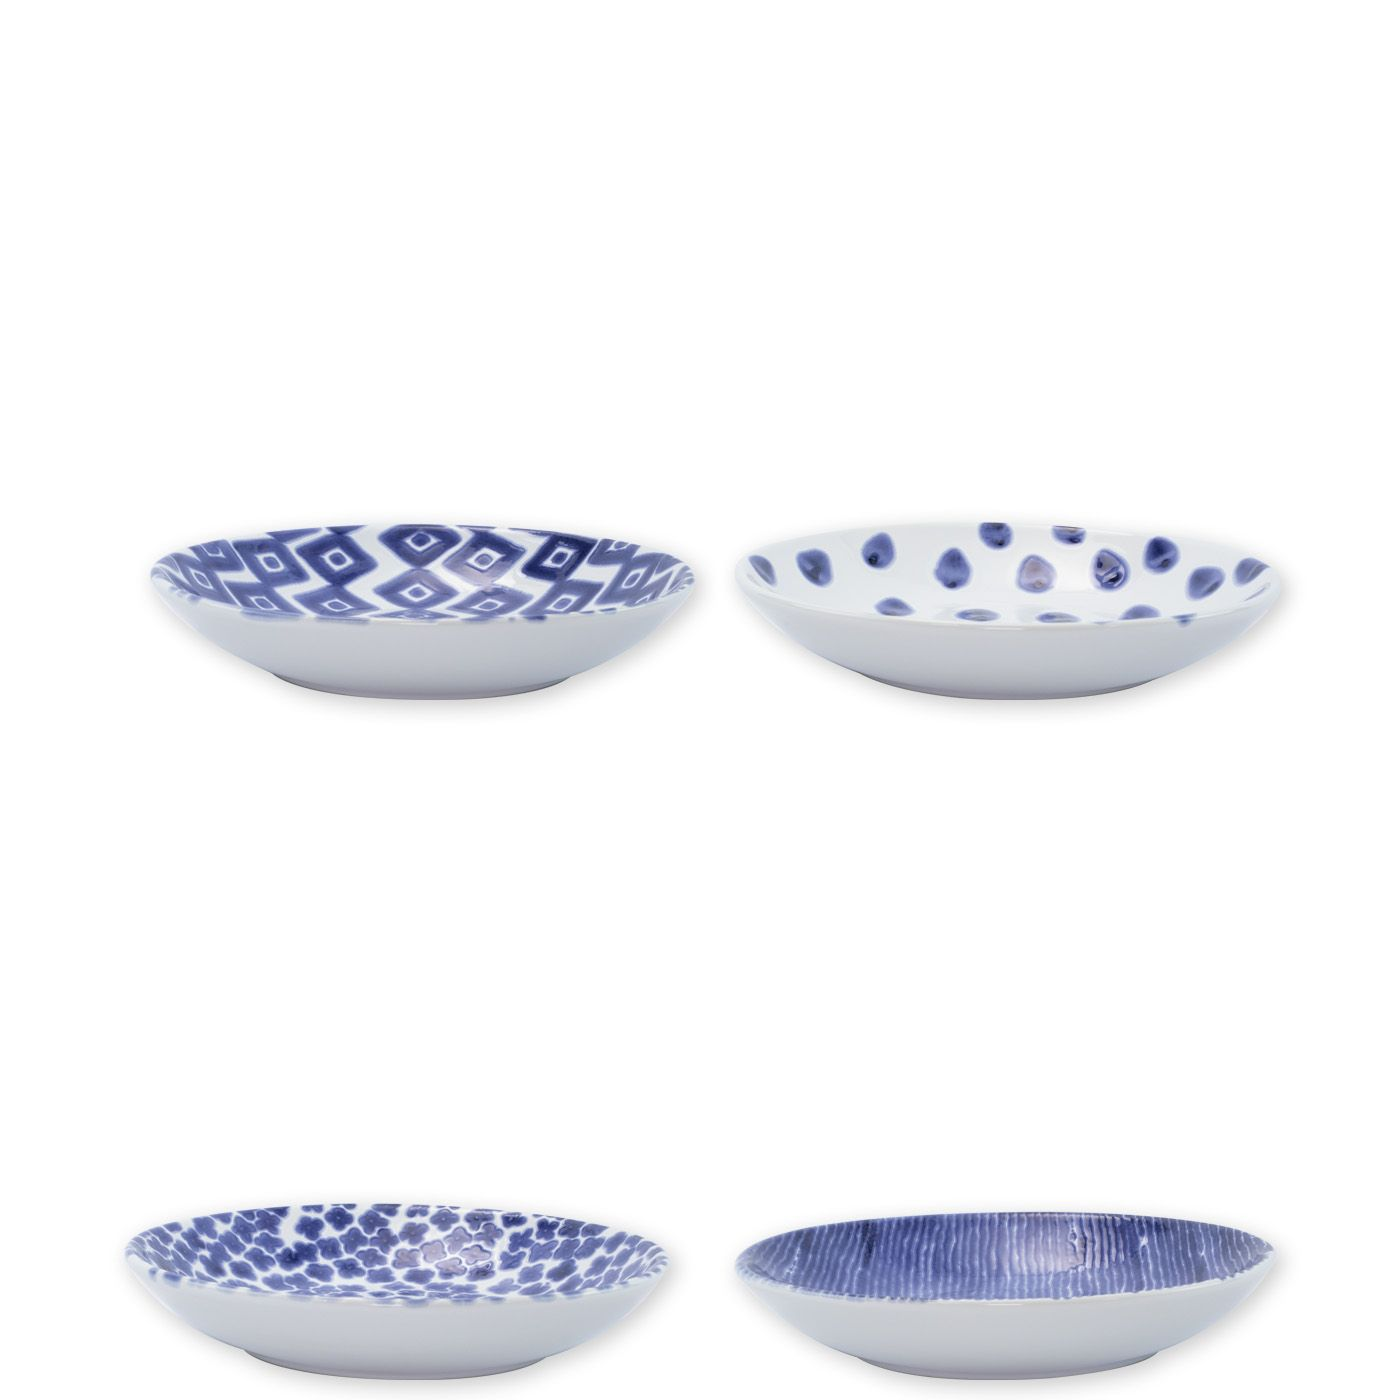 Vietri Santorini Assorted Pasta Bowls – Set of 4, 9.5″D